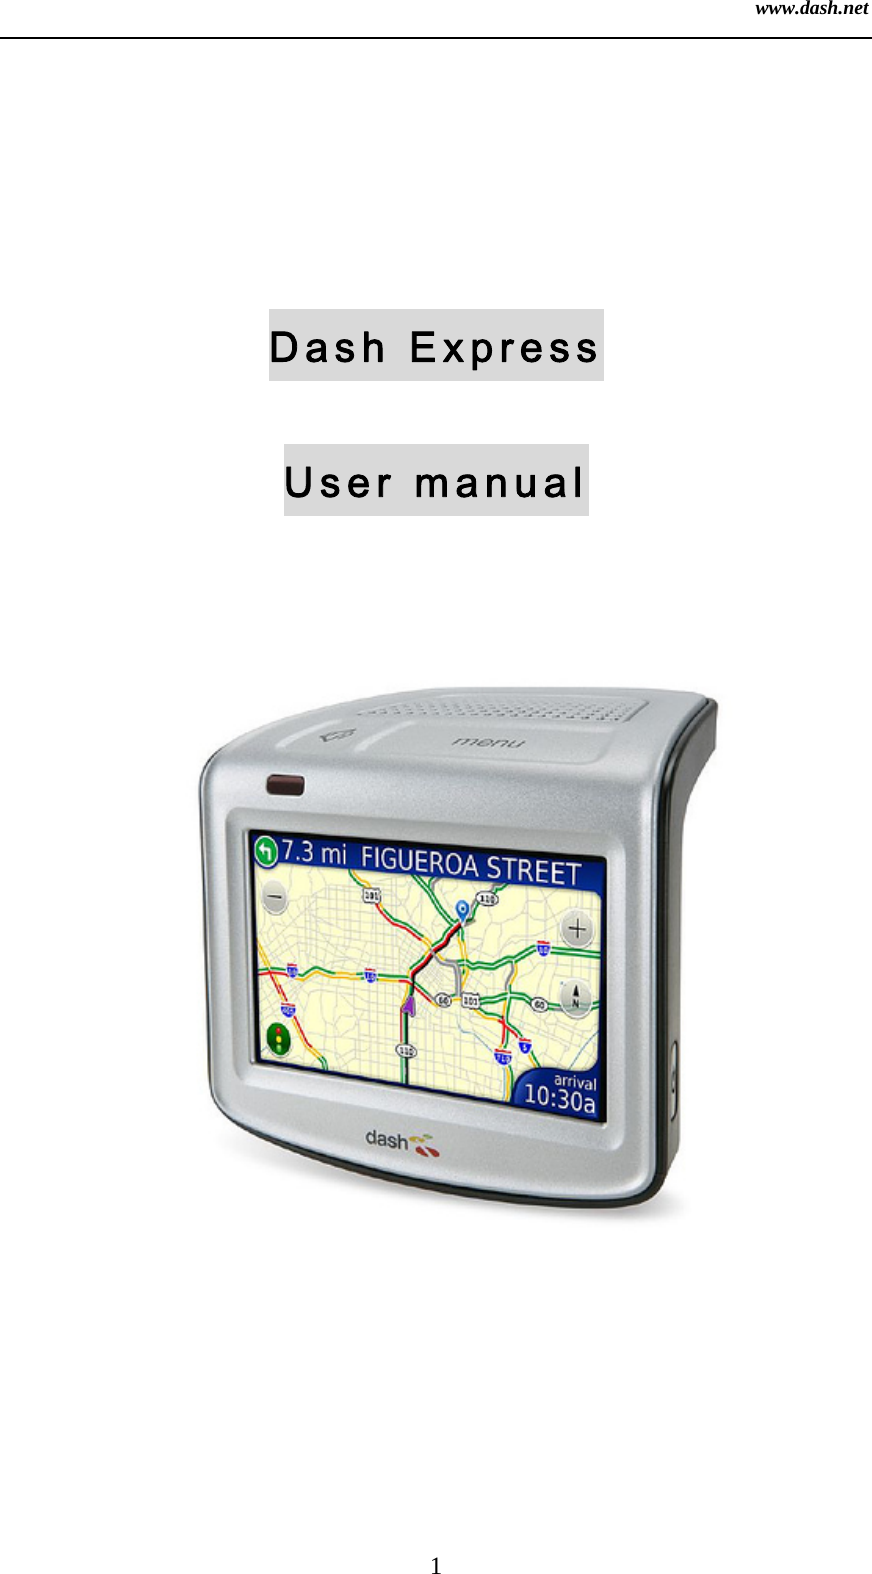 www.dash.net 1   Dash Express User manual 